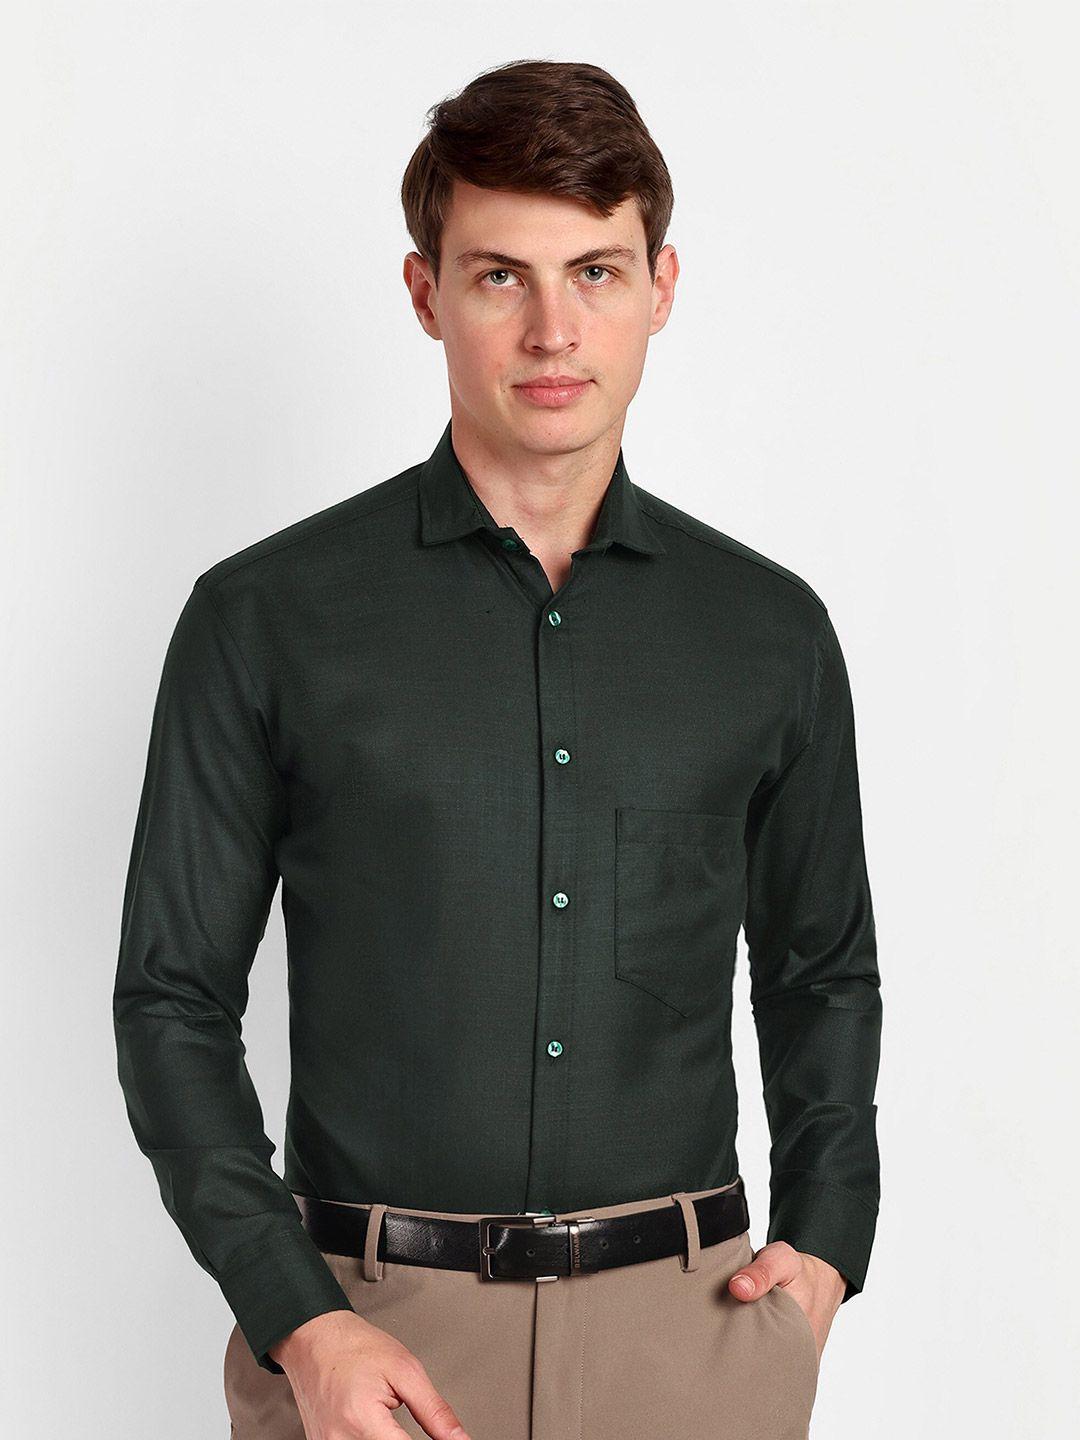 colorwings men assorted comfort semi sheer formal shirt